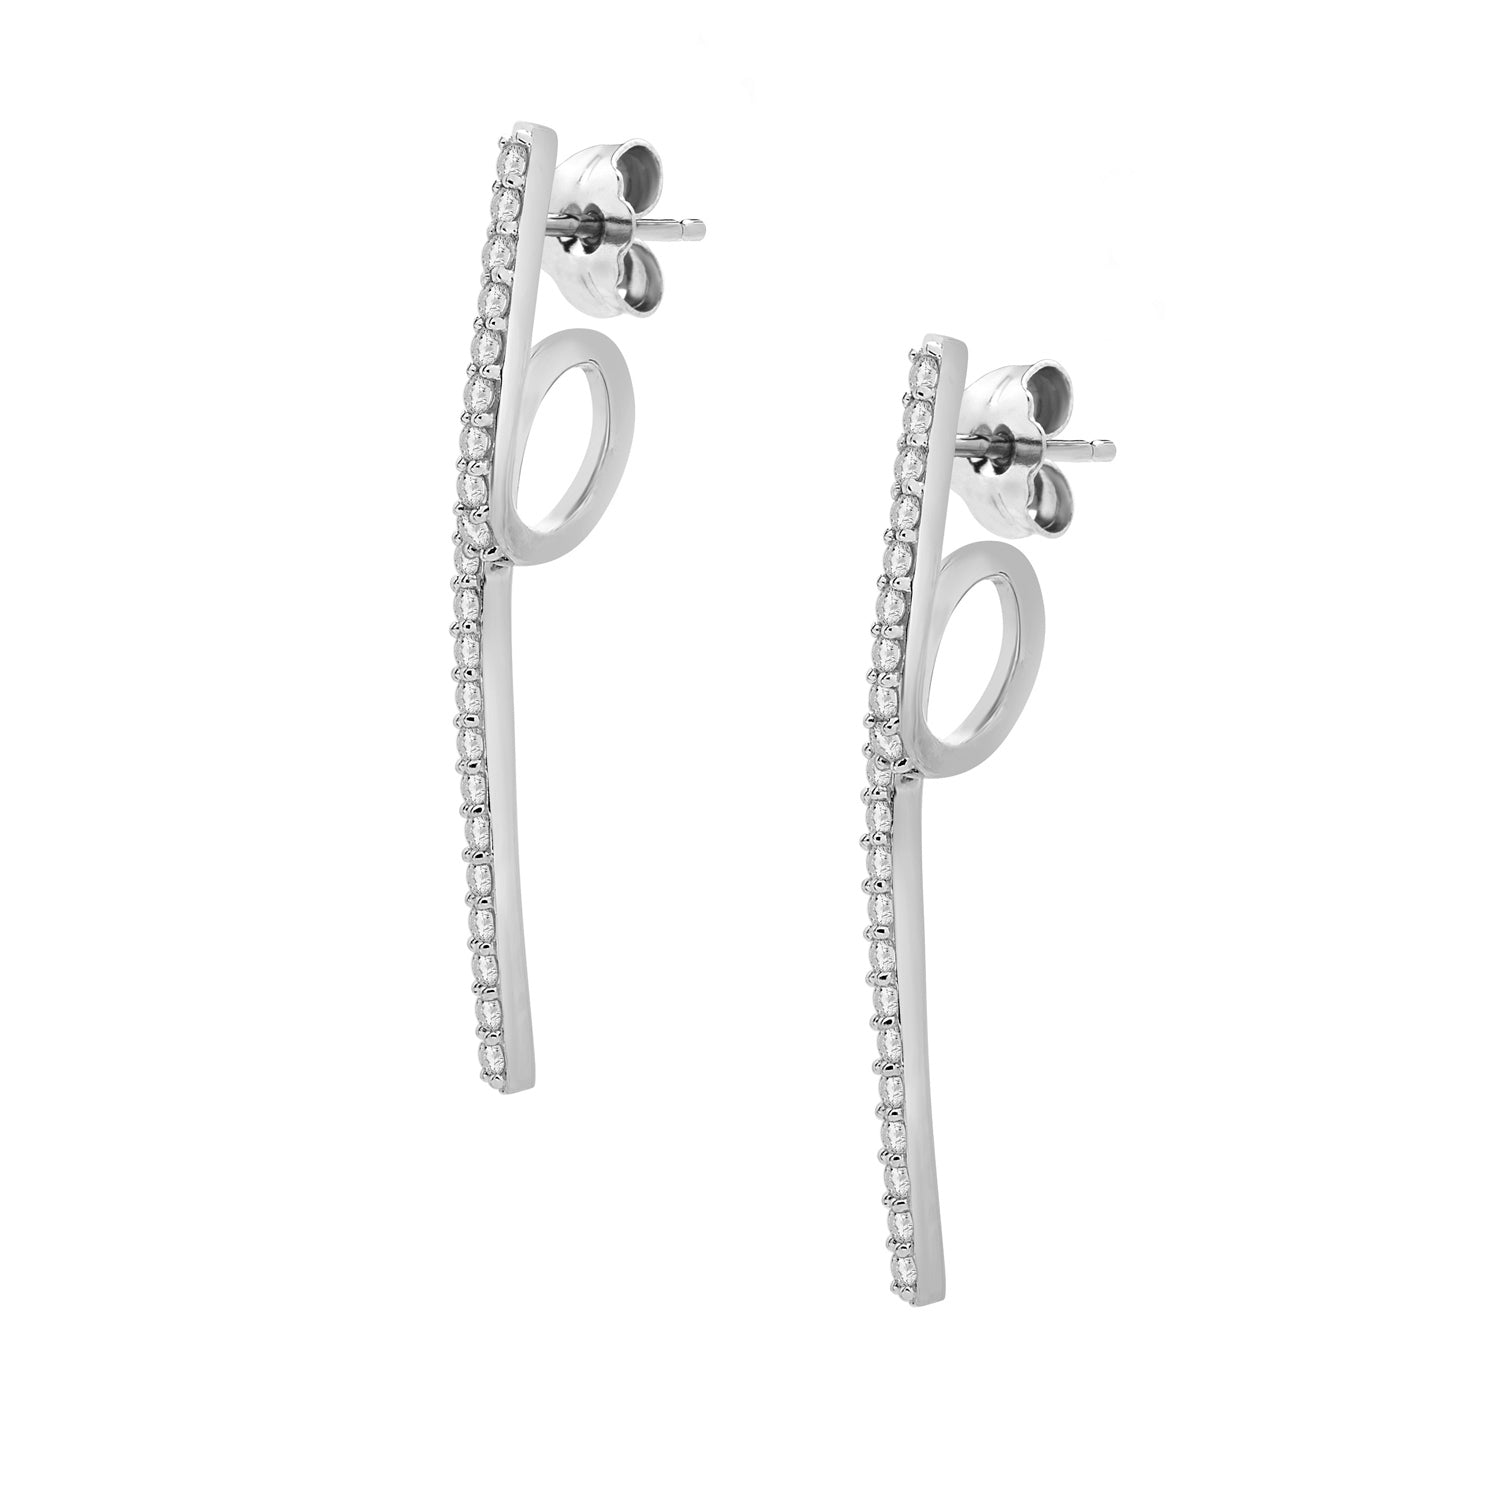 Eddi Diamond Free Form Earrings In Silver